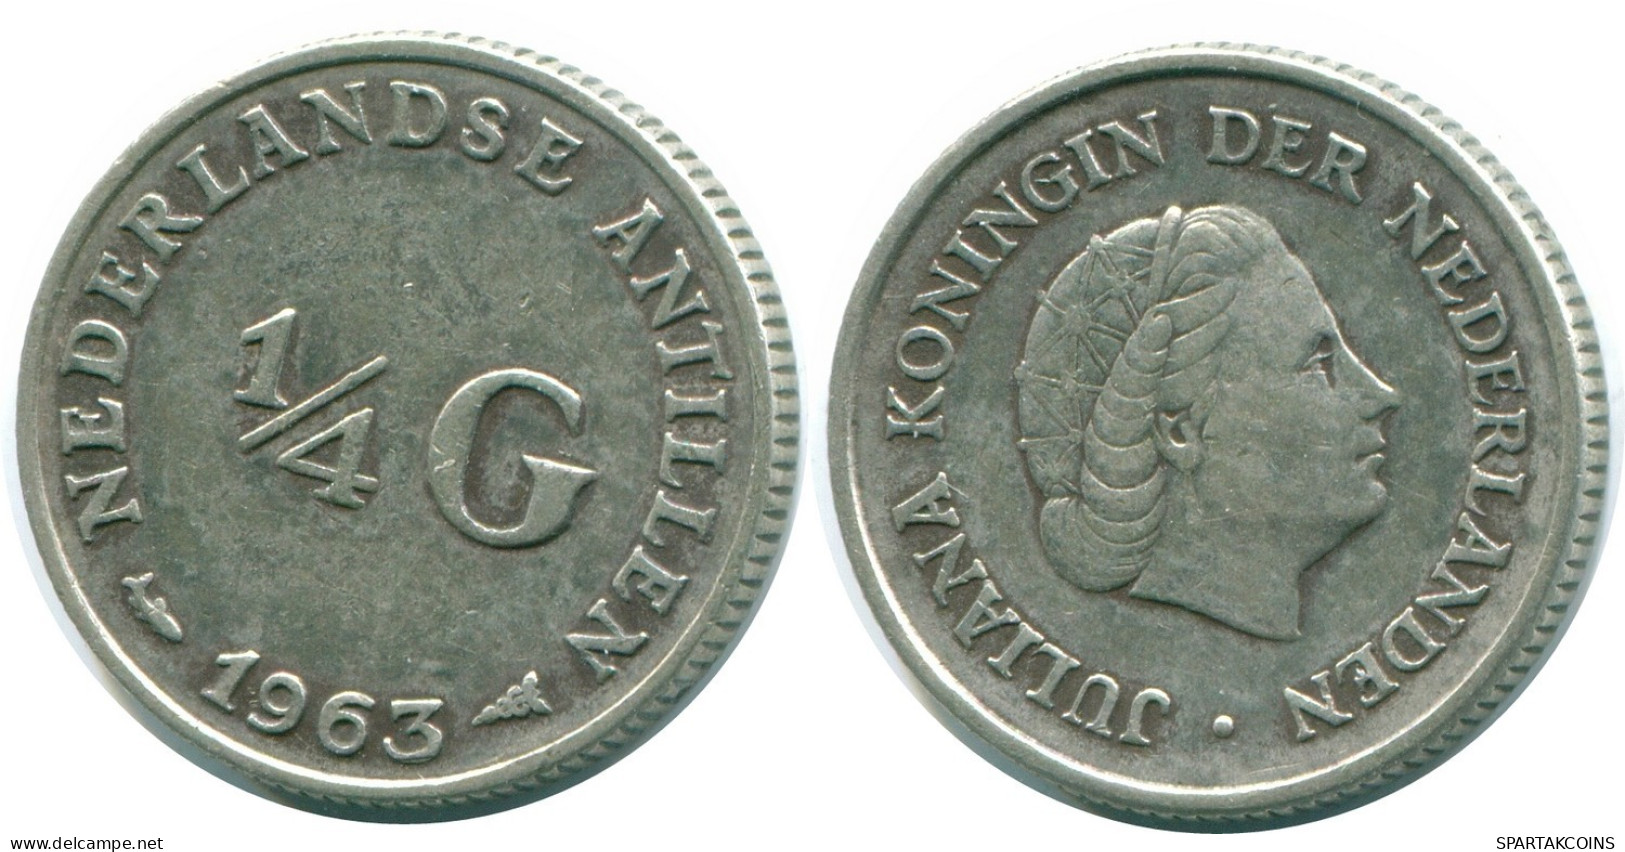 1/4 GULDEN 1963 NIEDERLÄNDISCHE ANTILLEN SILBER Koloniale Münze #NL11247.4.D.A - Antille Olandesi